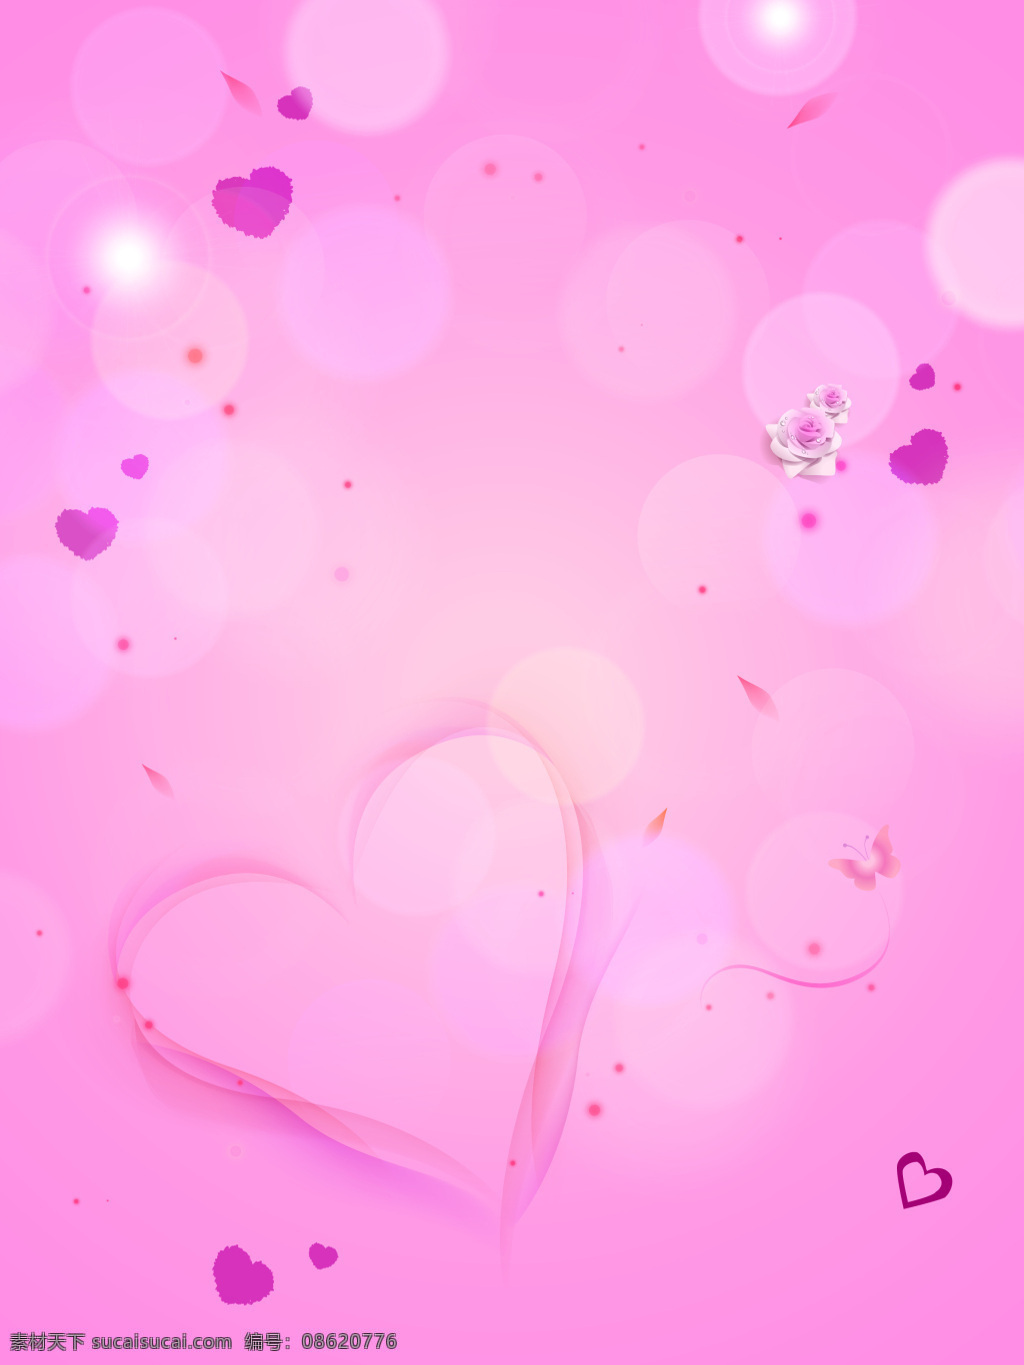 粉色 浪漫 心形 海报 背景 梦幻 爱情 情人节海报 七夕海报 感情 母亲节海报 矢量